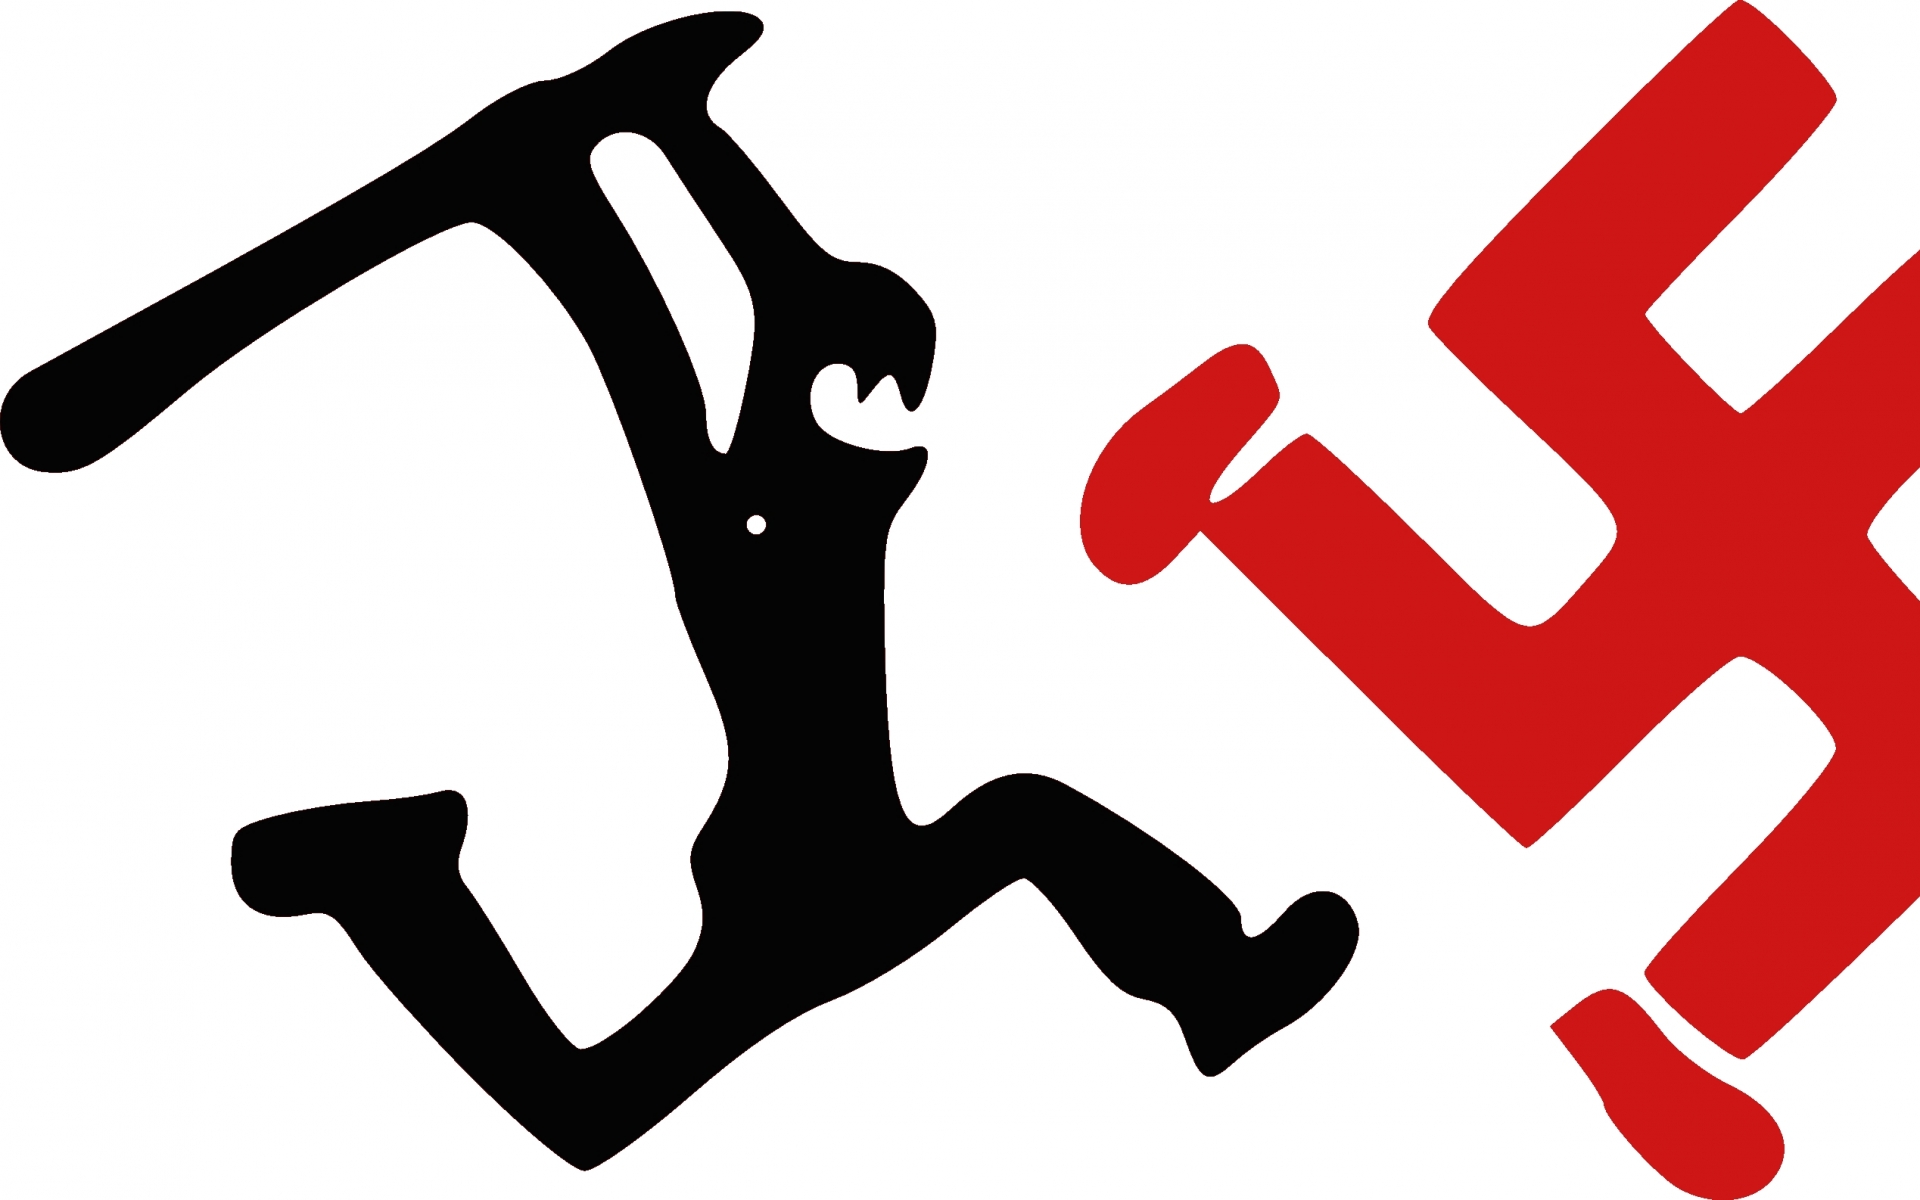 Антифашиста из Барановичей собираются судить за «распространение нацистской символики»